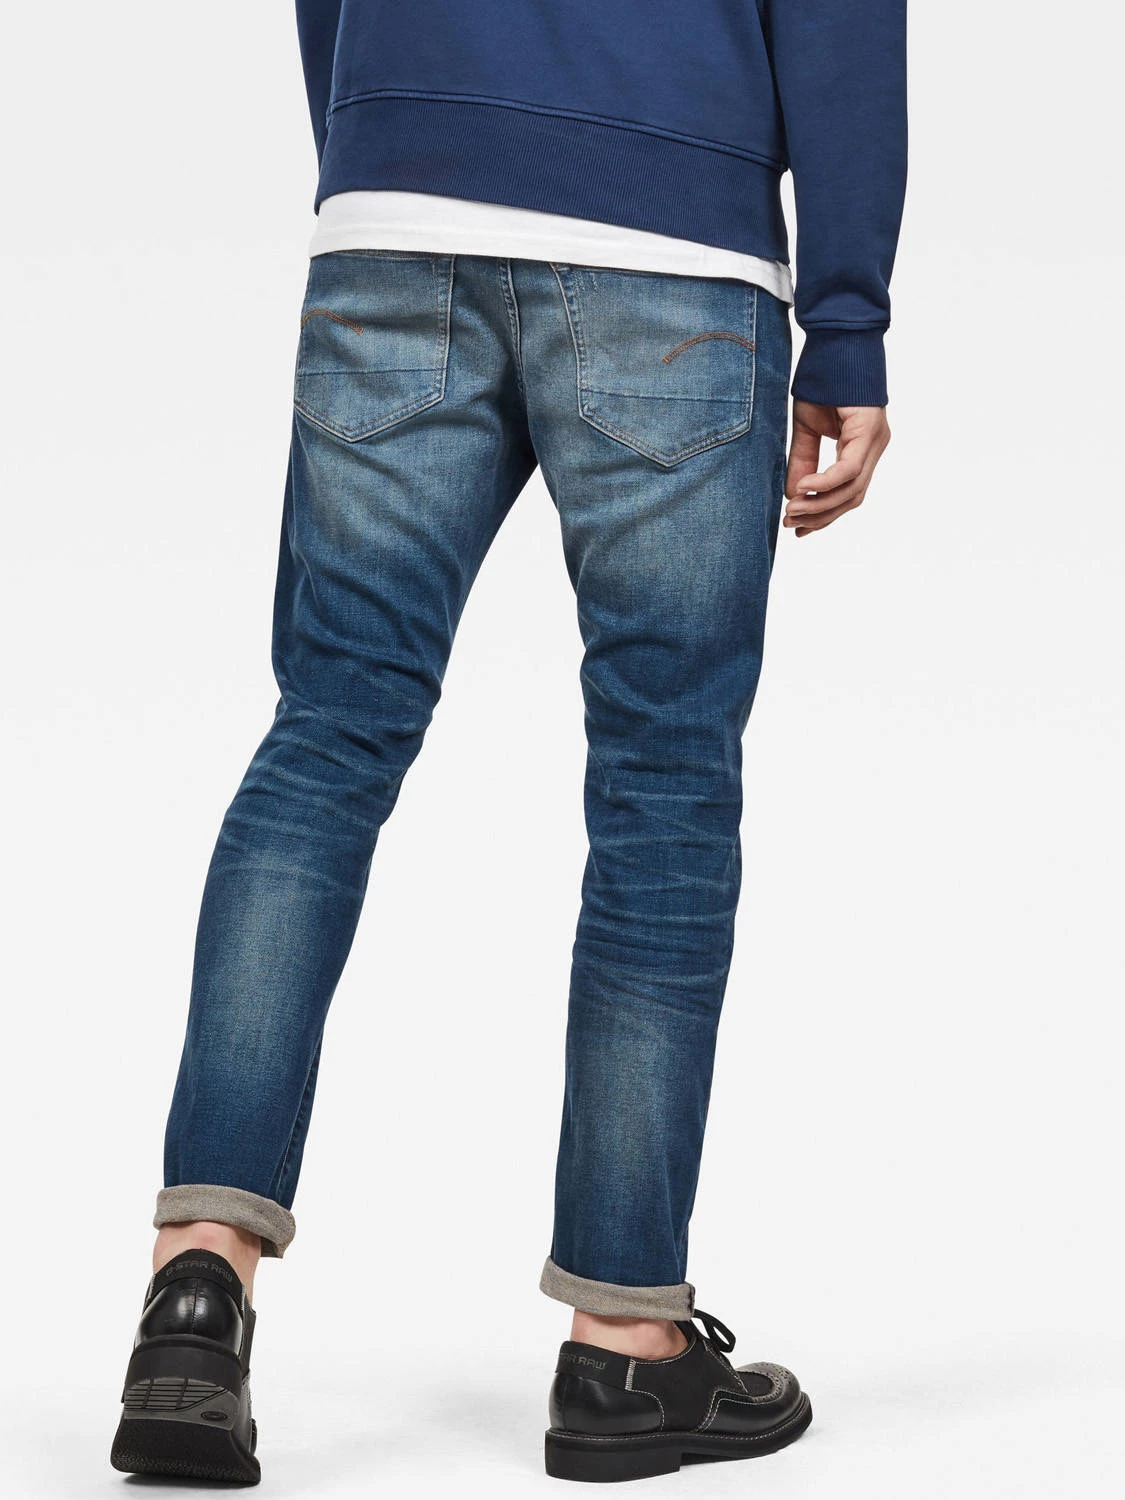 arm hop Sportman G-Star Jeans 3310 Slim | Roetgerink Online Herenbroeken Kopen